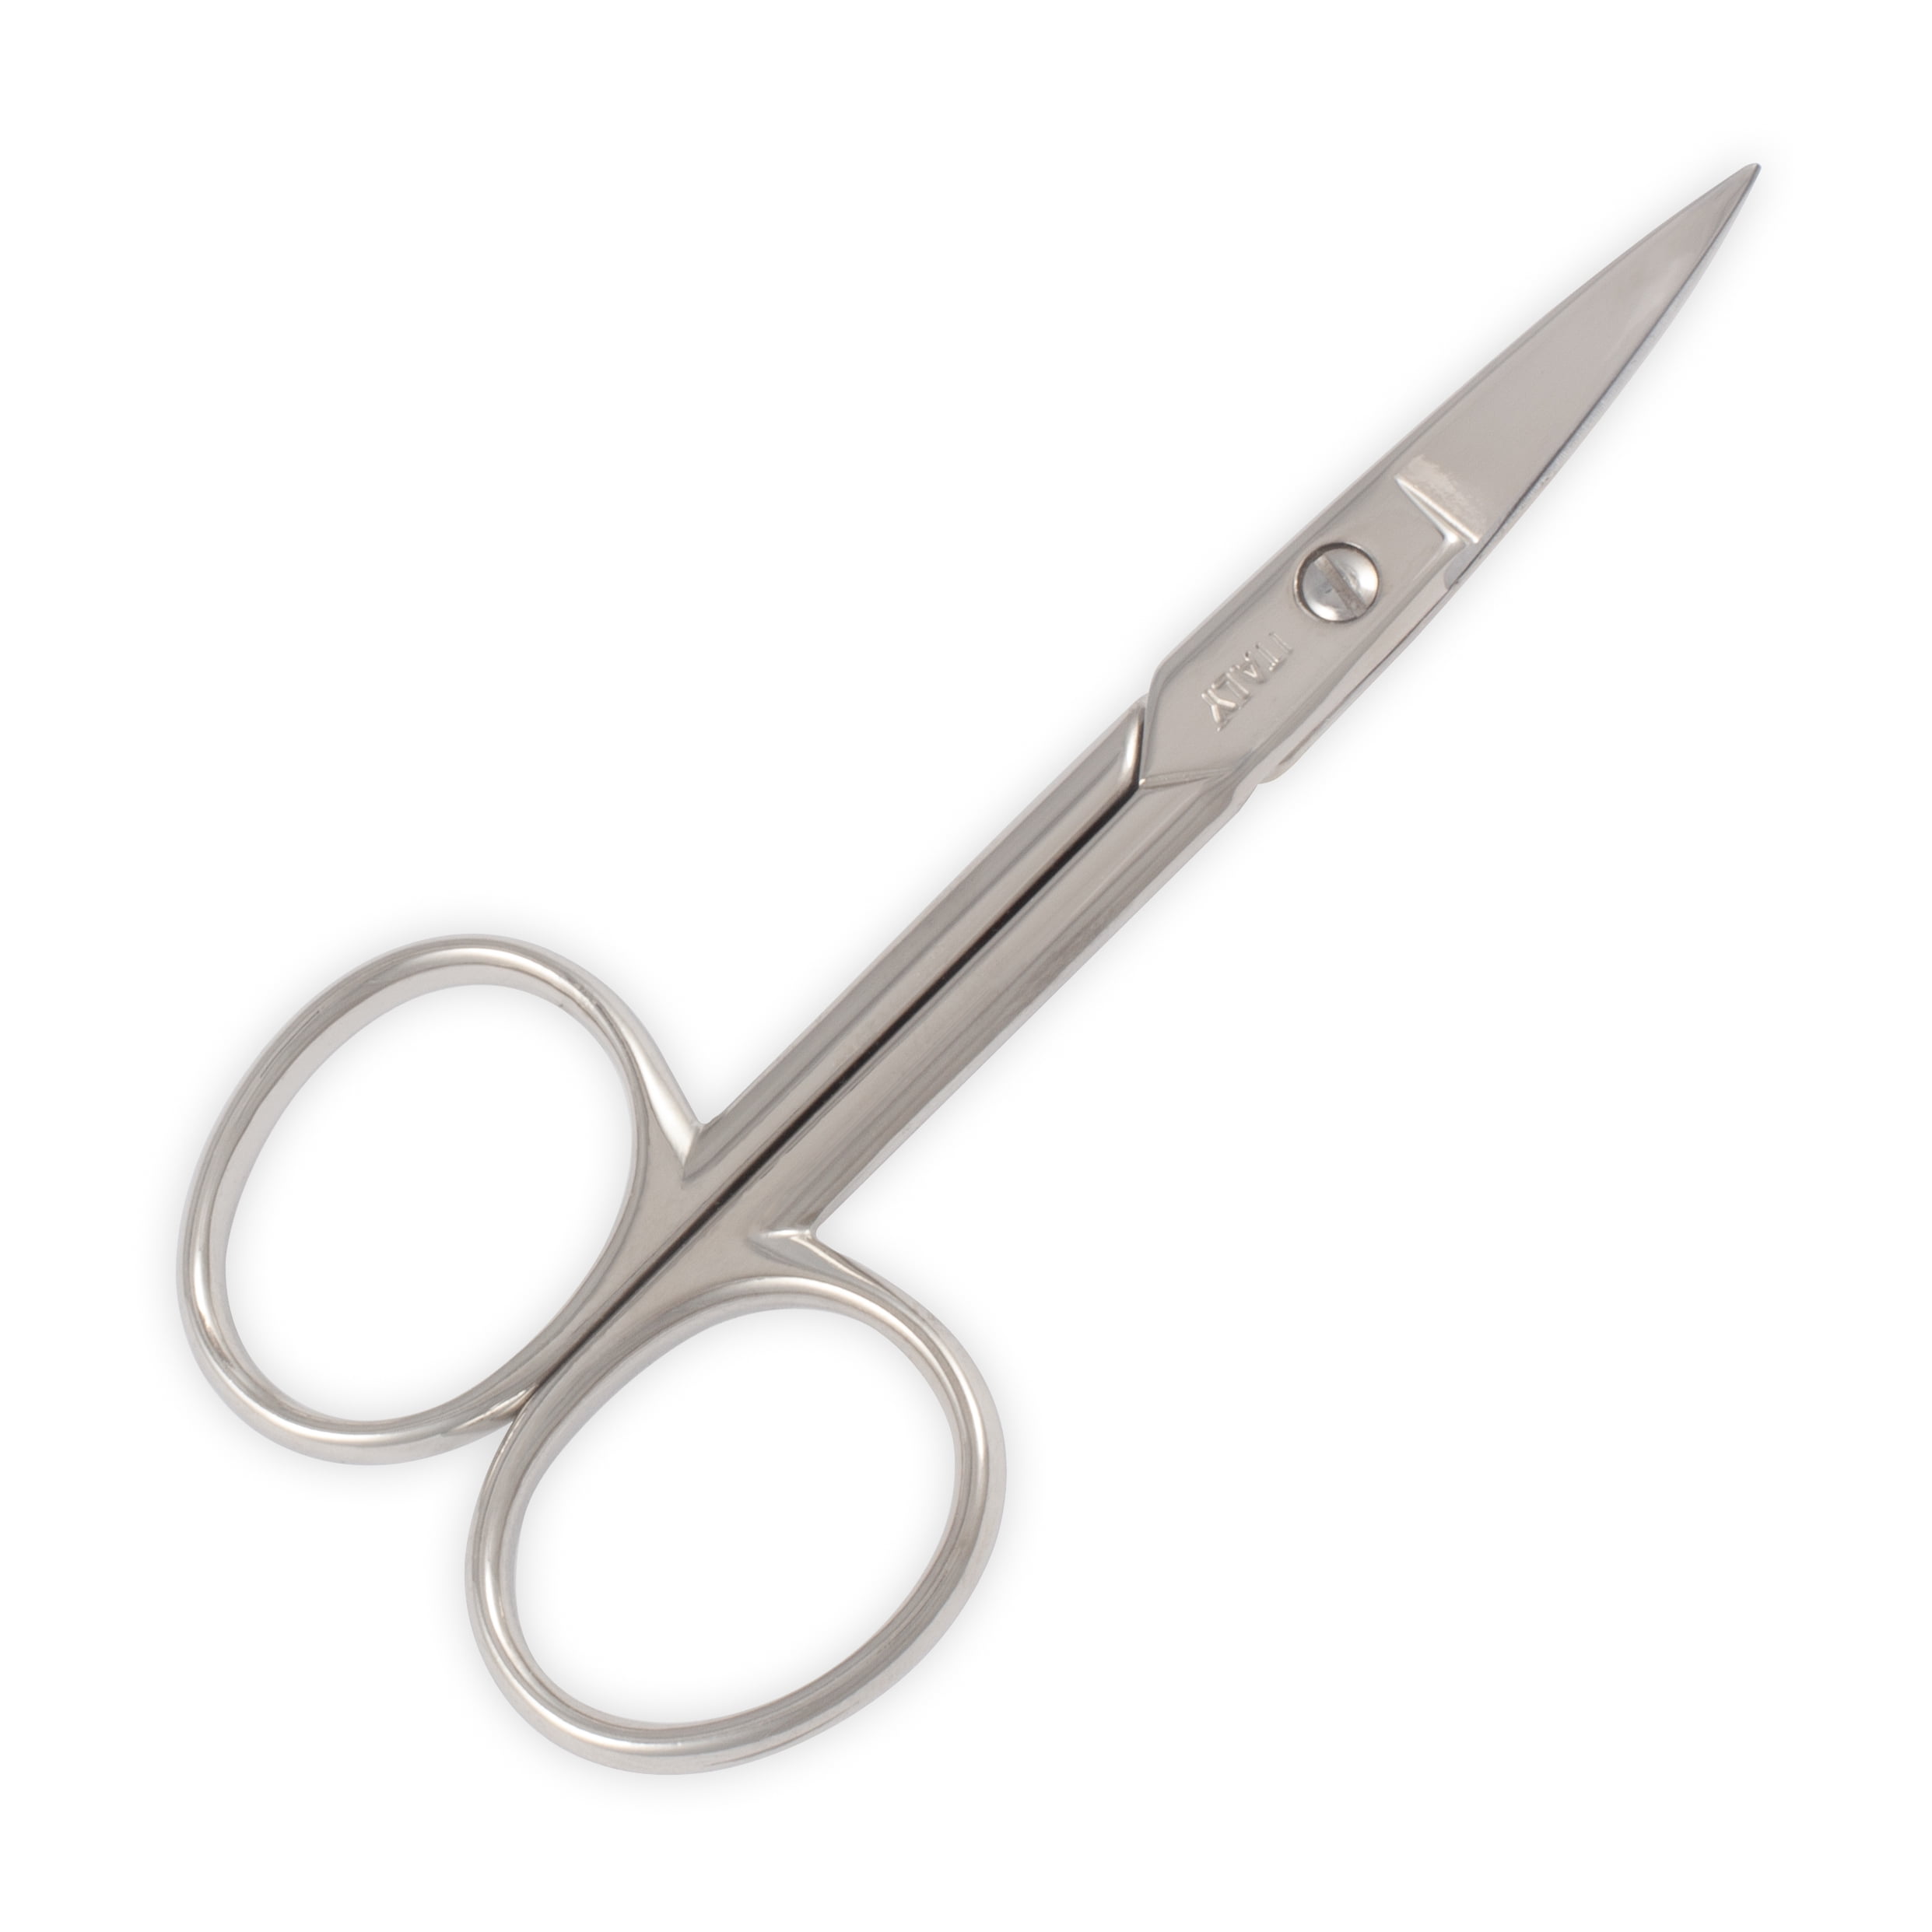 Norcostco Curved Cuticle Scissors - Norcostco, Inc.